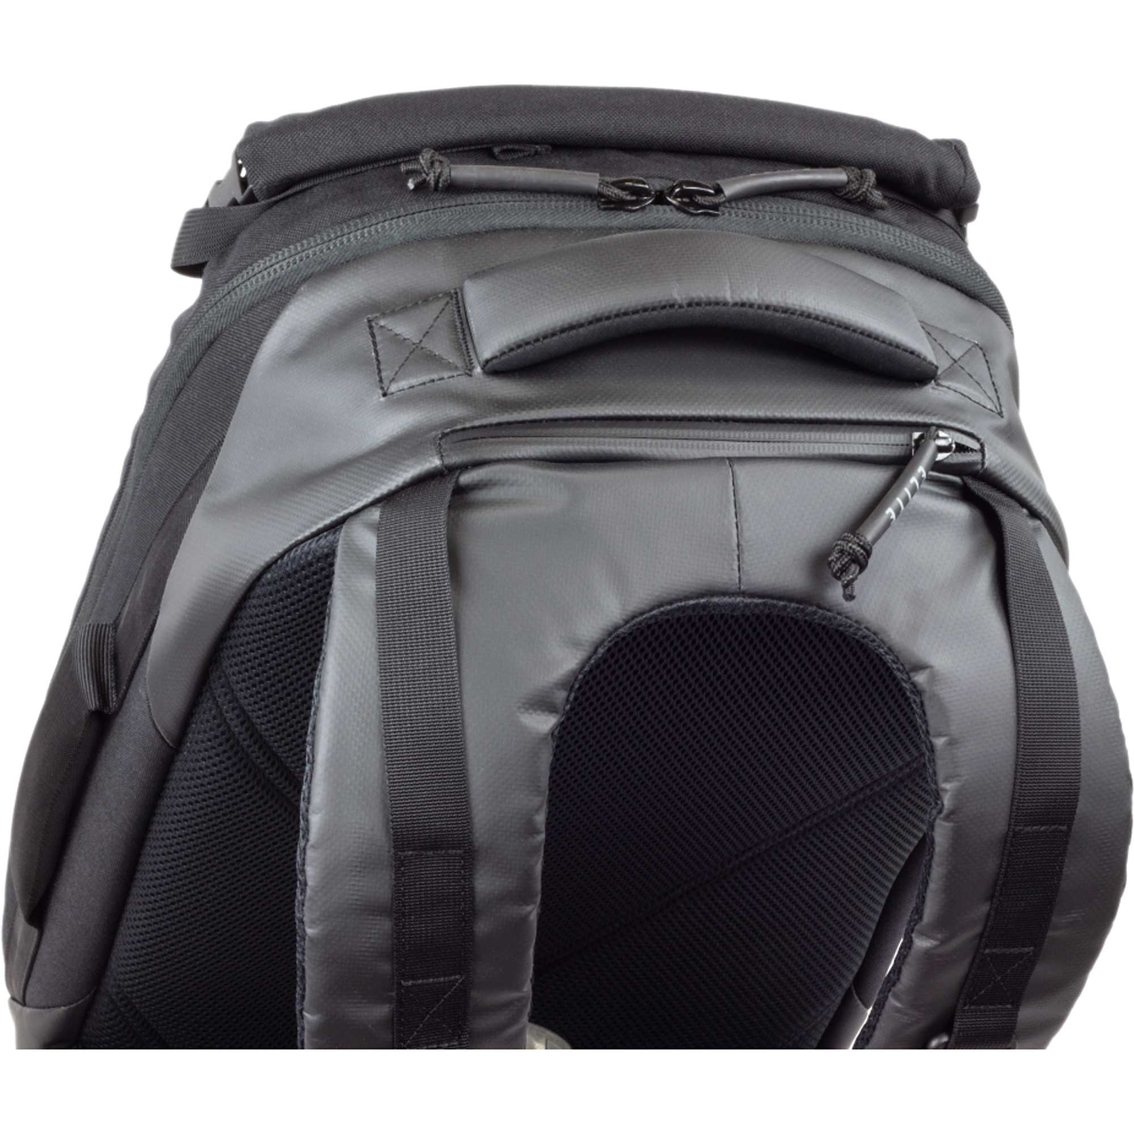 Elite Survival Stealth SBR Backpack - Image 5 of 5